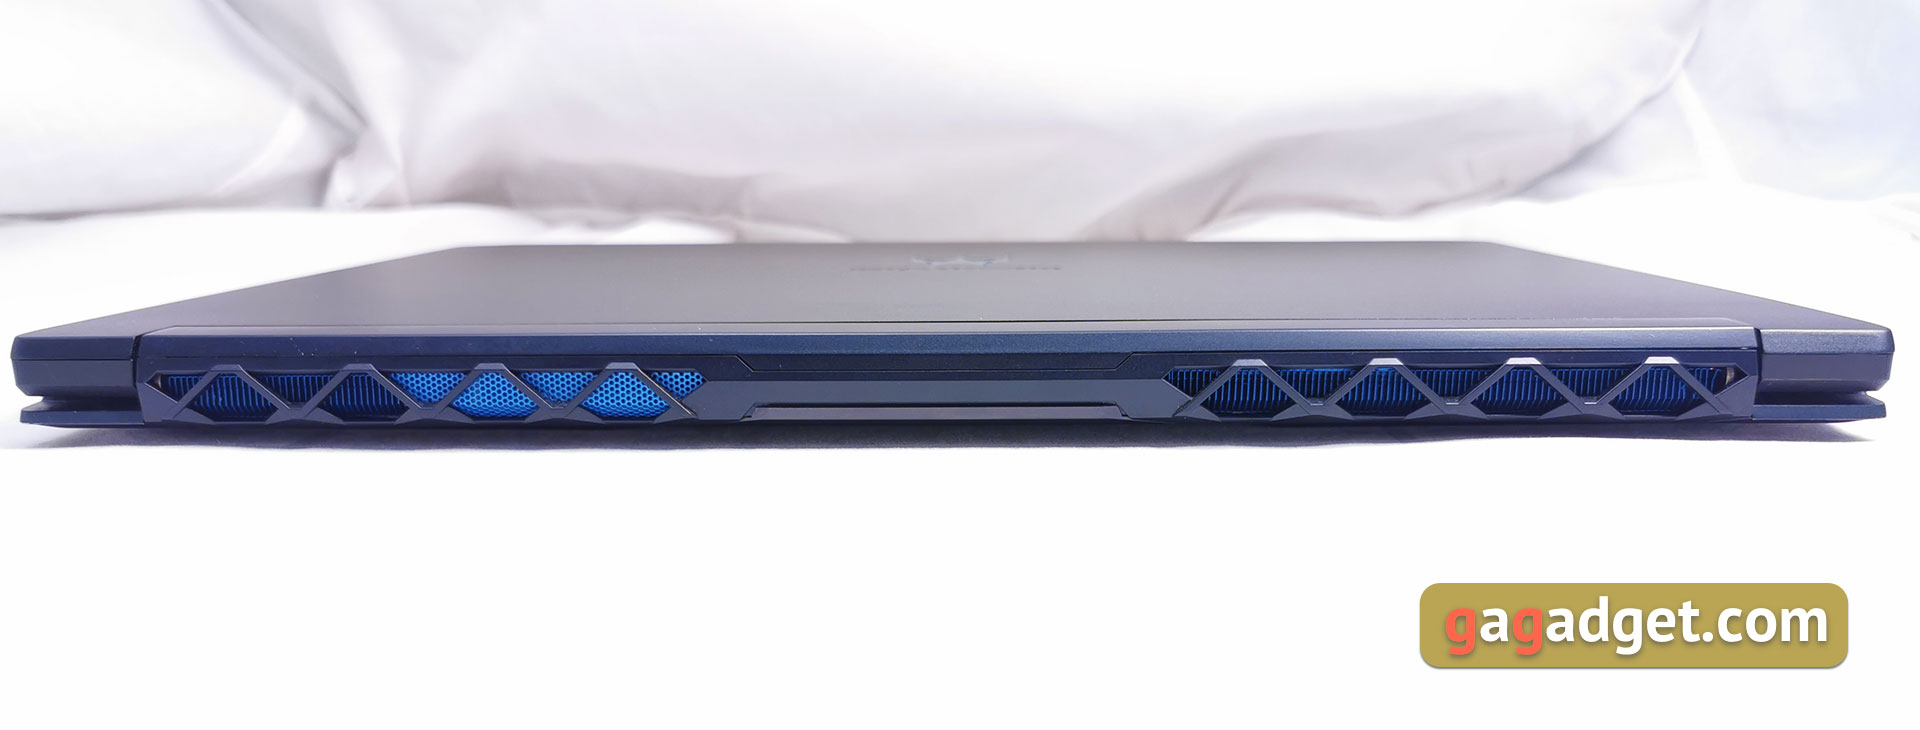 Обзор Acer Predator Triton 500: игровой ноутбук с RTX 2080 Max-Q в компактном лёгком корпусе-9